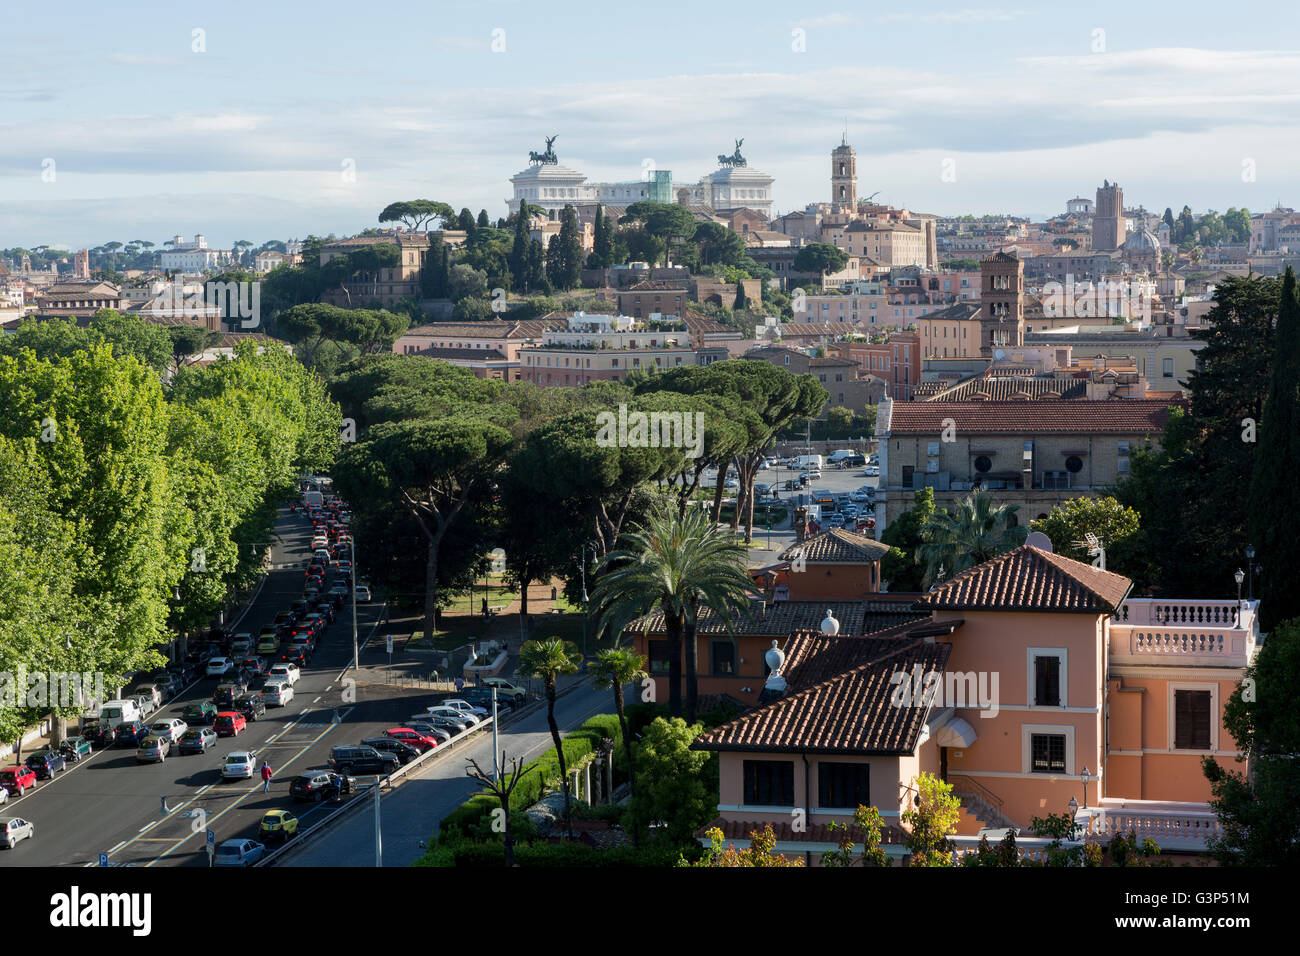 View of Rome from the Giardino degli aranci. Garden of oranges. Stock Photo